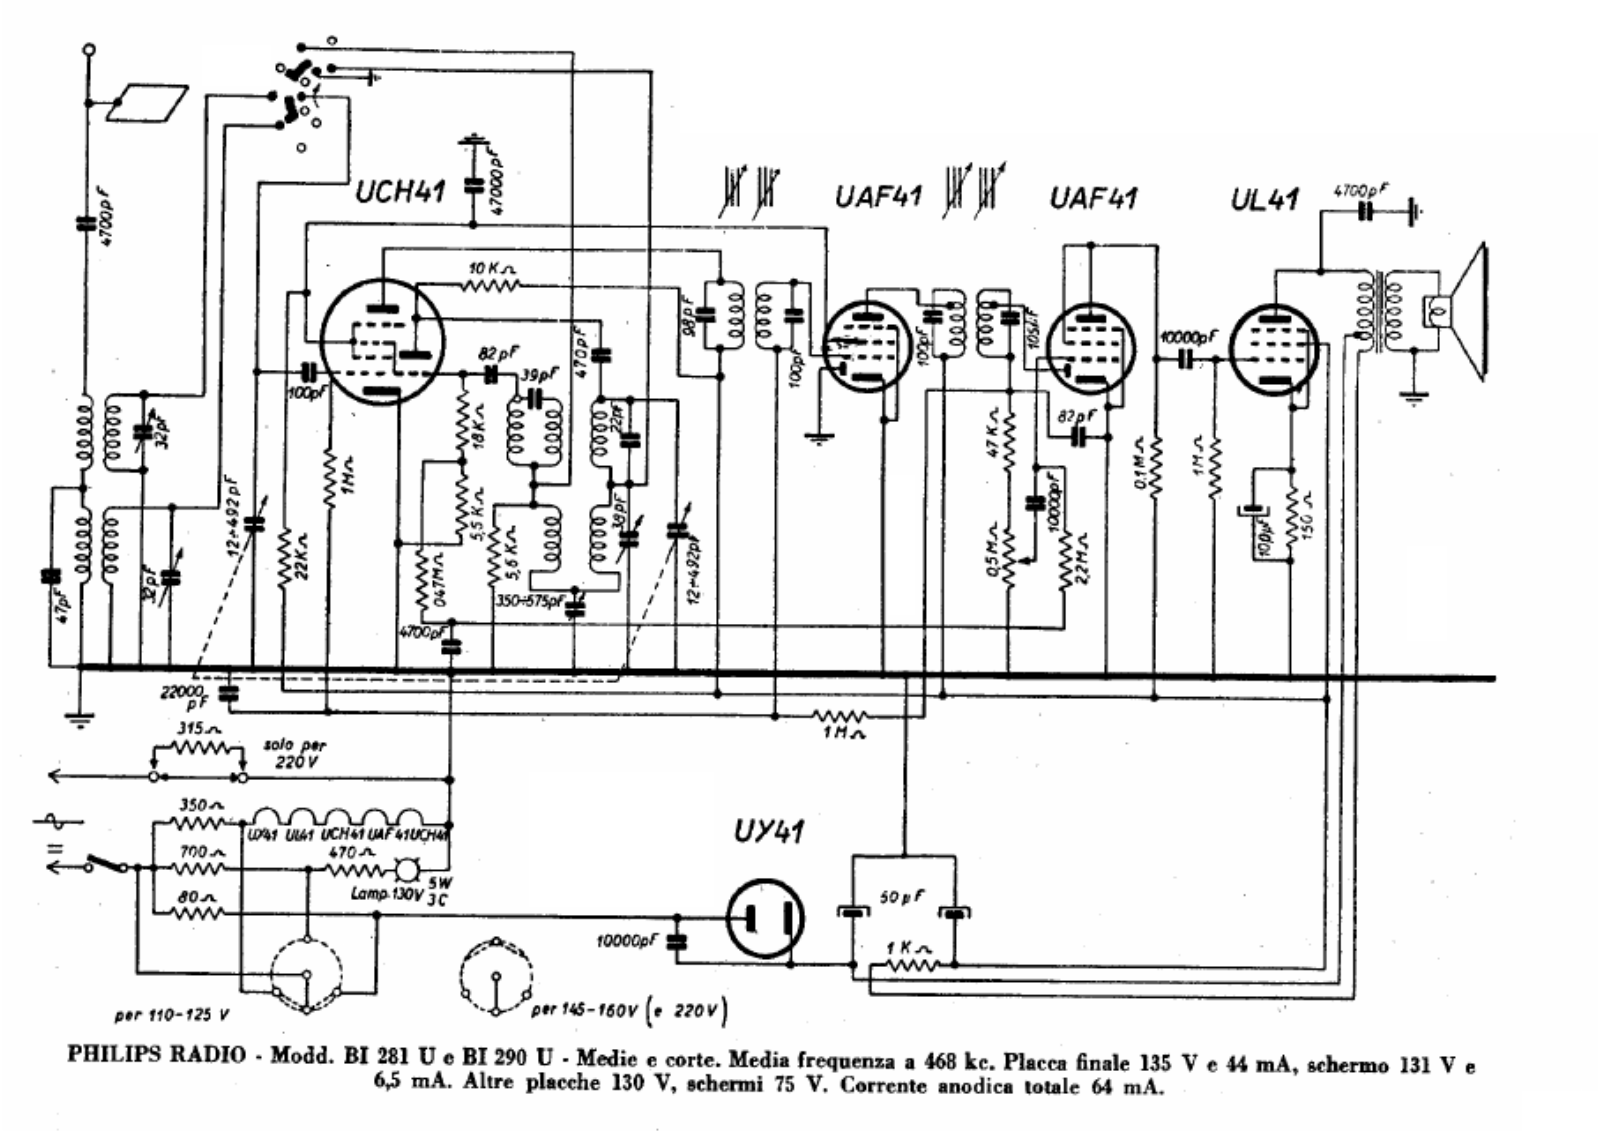 Philips bi281u, bi290u schematic